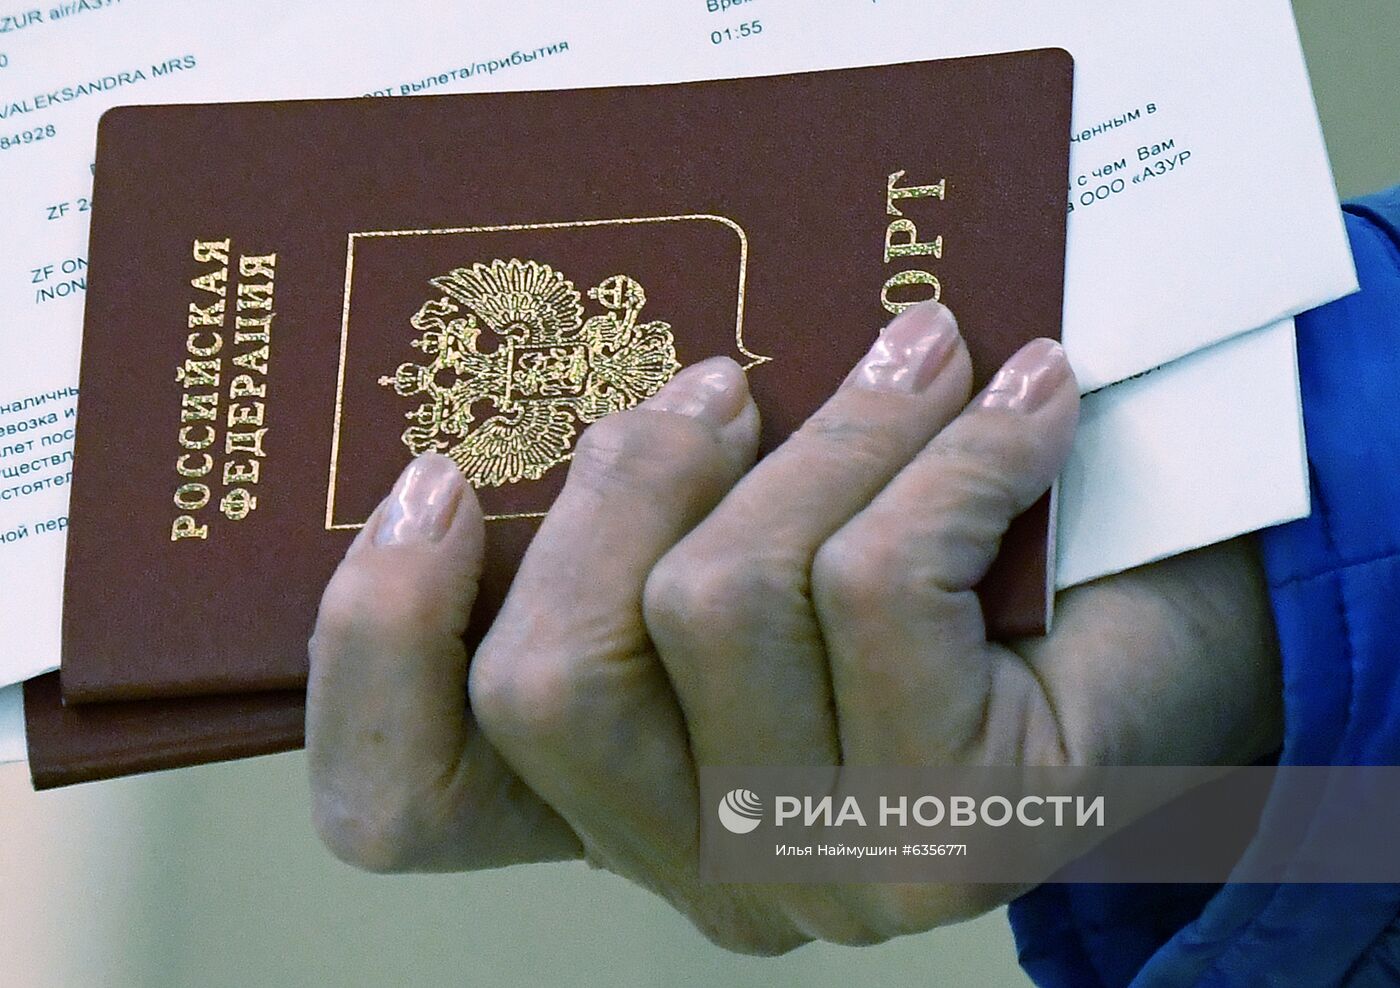 Возобновление международных перелетов в аэропорту Красноярска